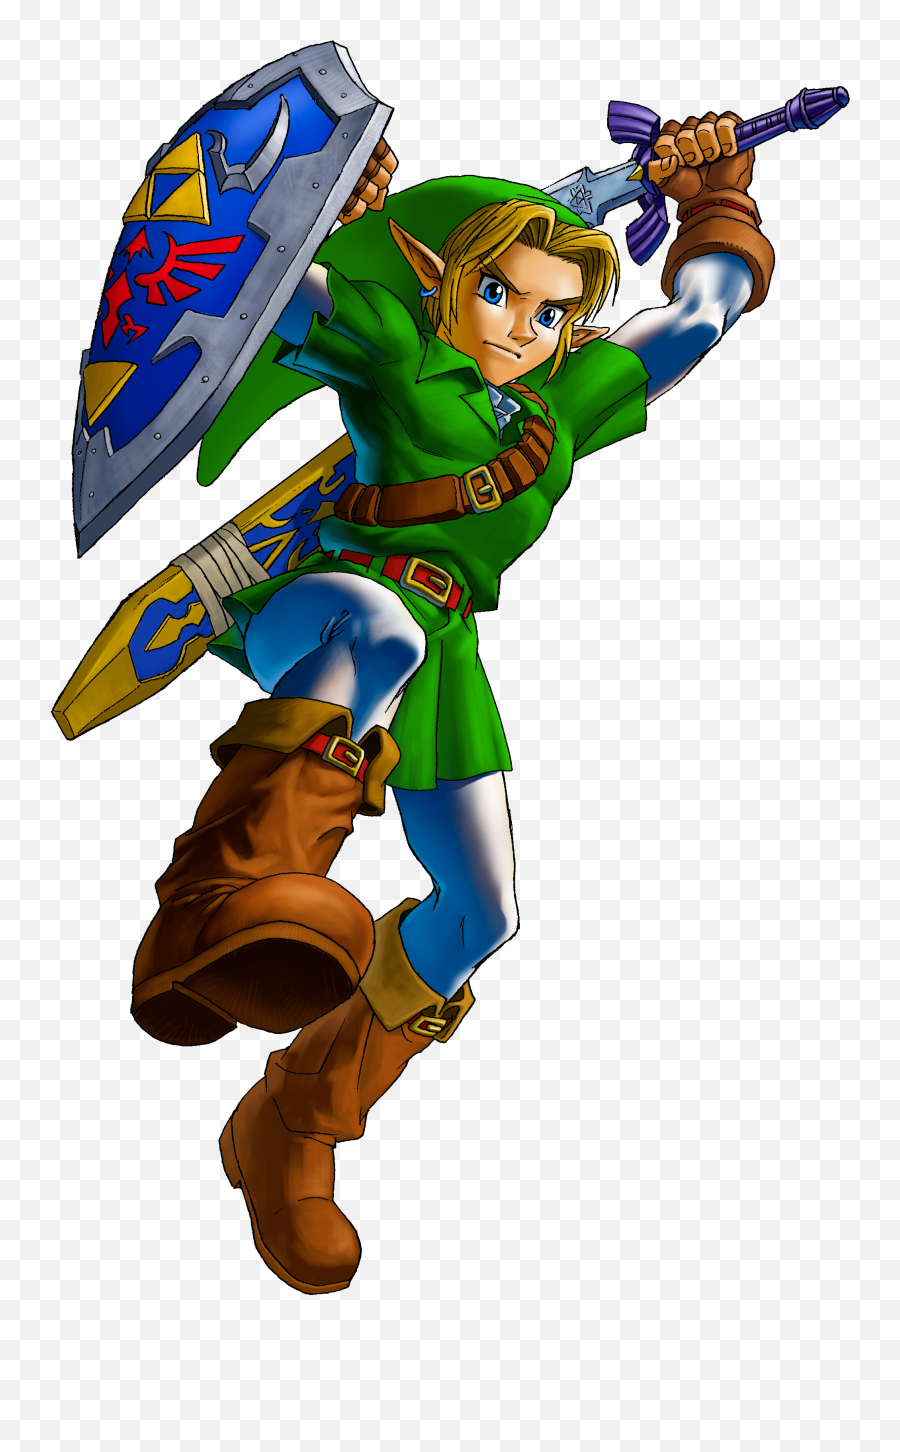 Legend Of Zelda Transparent Png Image - Legend Of Zelda Ocarina Of Time Link Emoji,Legend Of Zelda Png